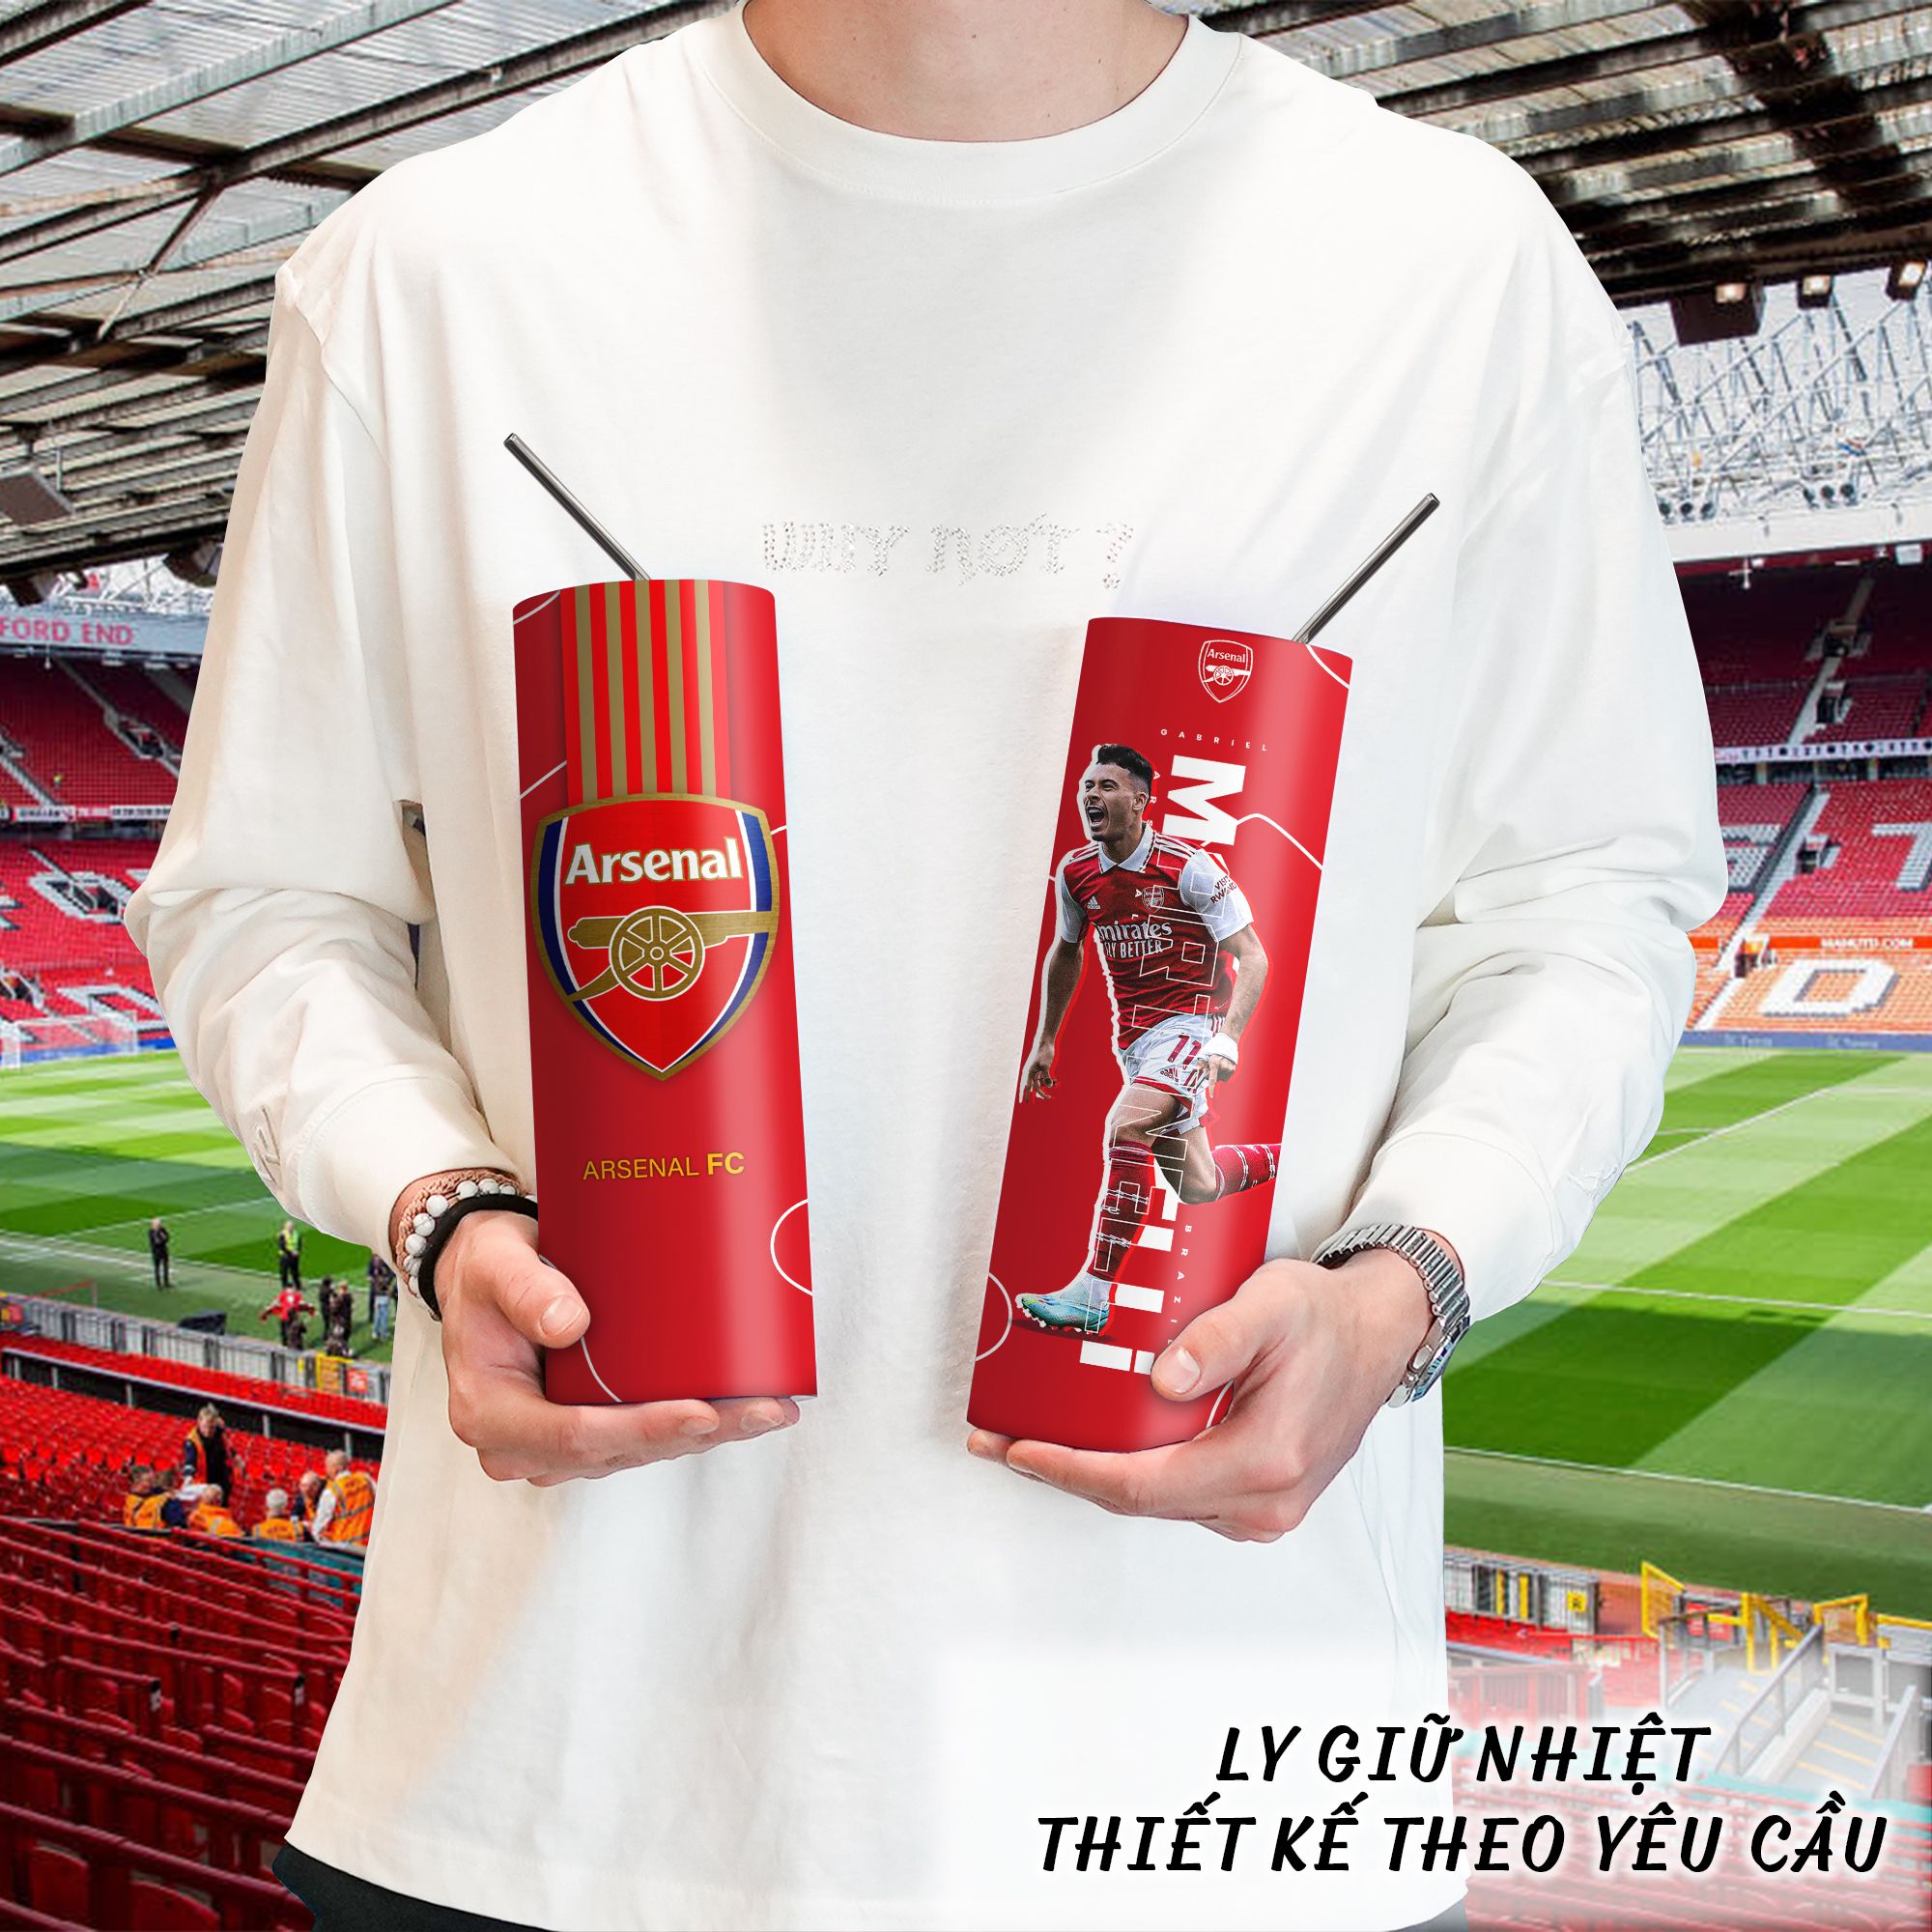  Arsenal CLB Bóng Đá Kết Hợp Cầu Thủ Go Drink Fans Bóng Đá Skinny 600ml In tên, hình ảnh theo yêu cầu 